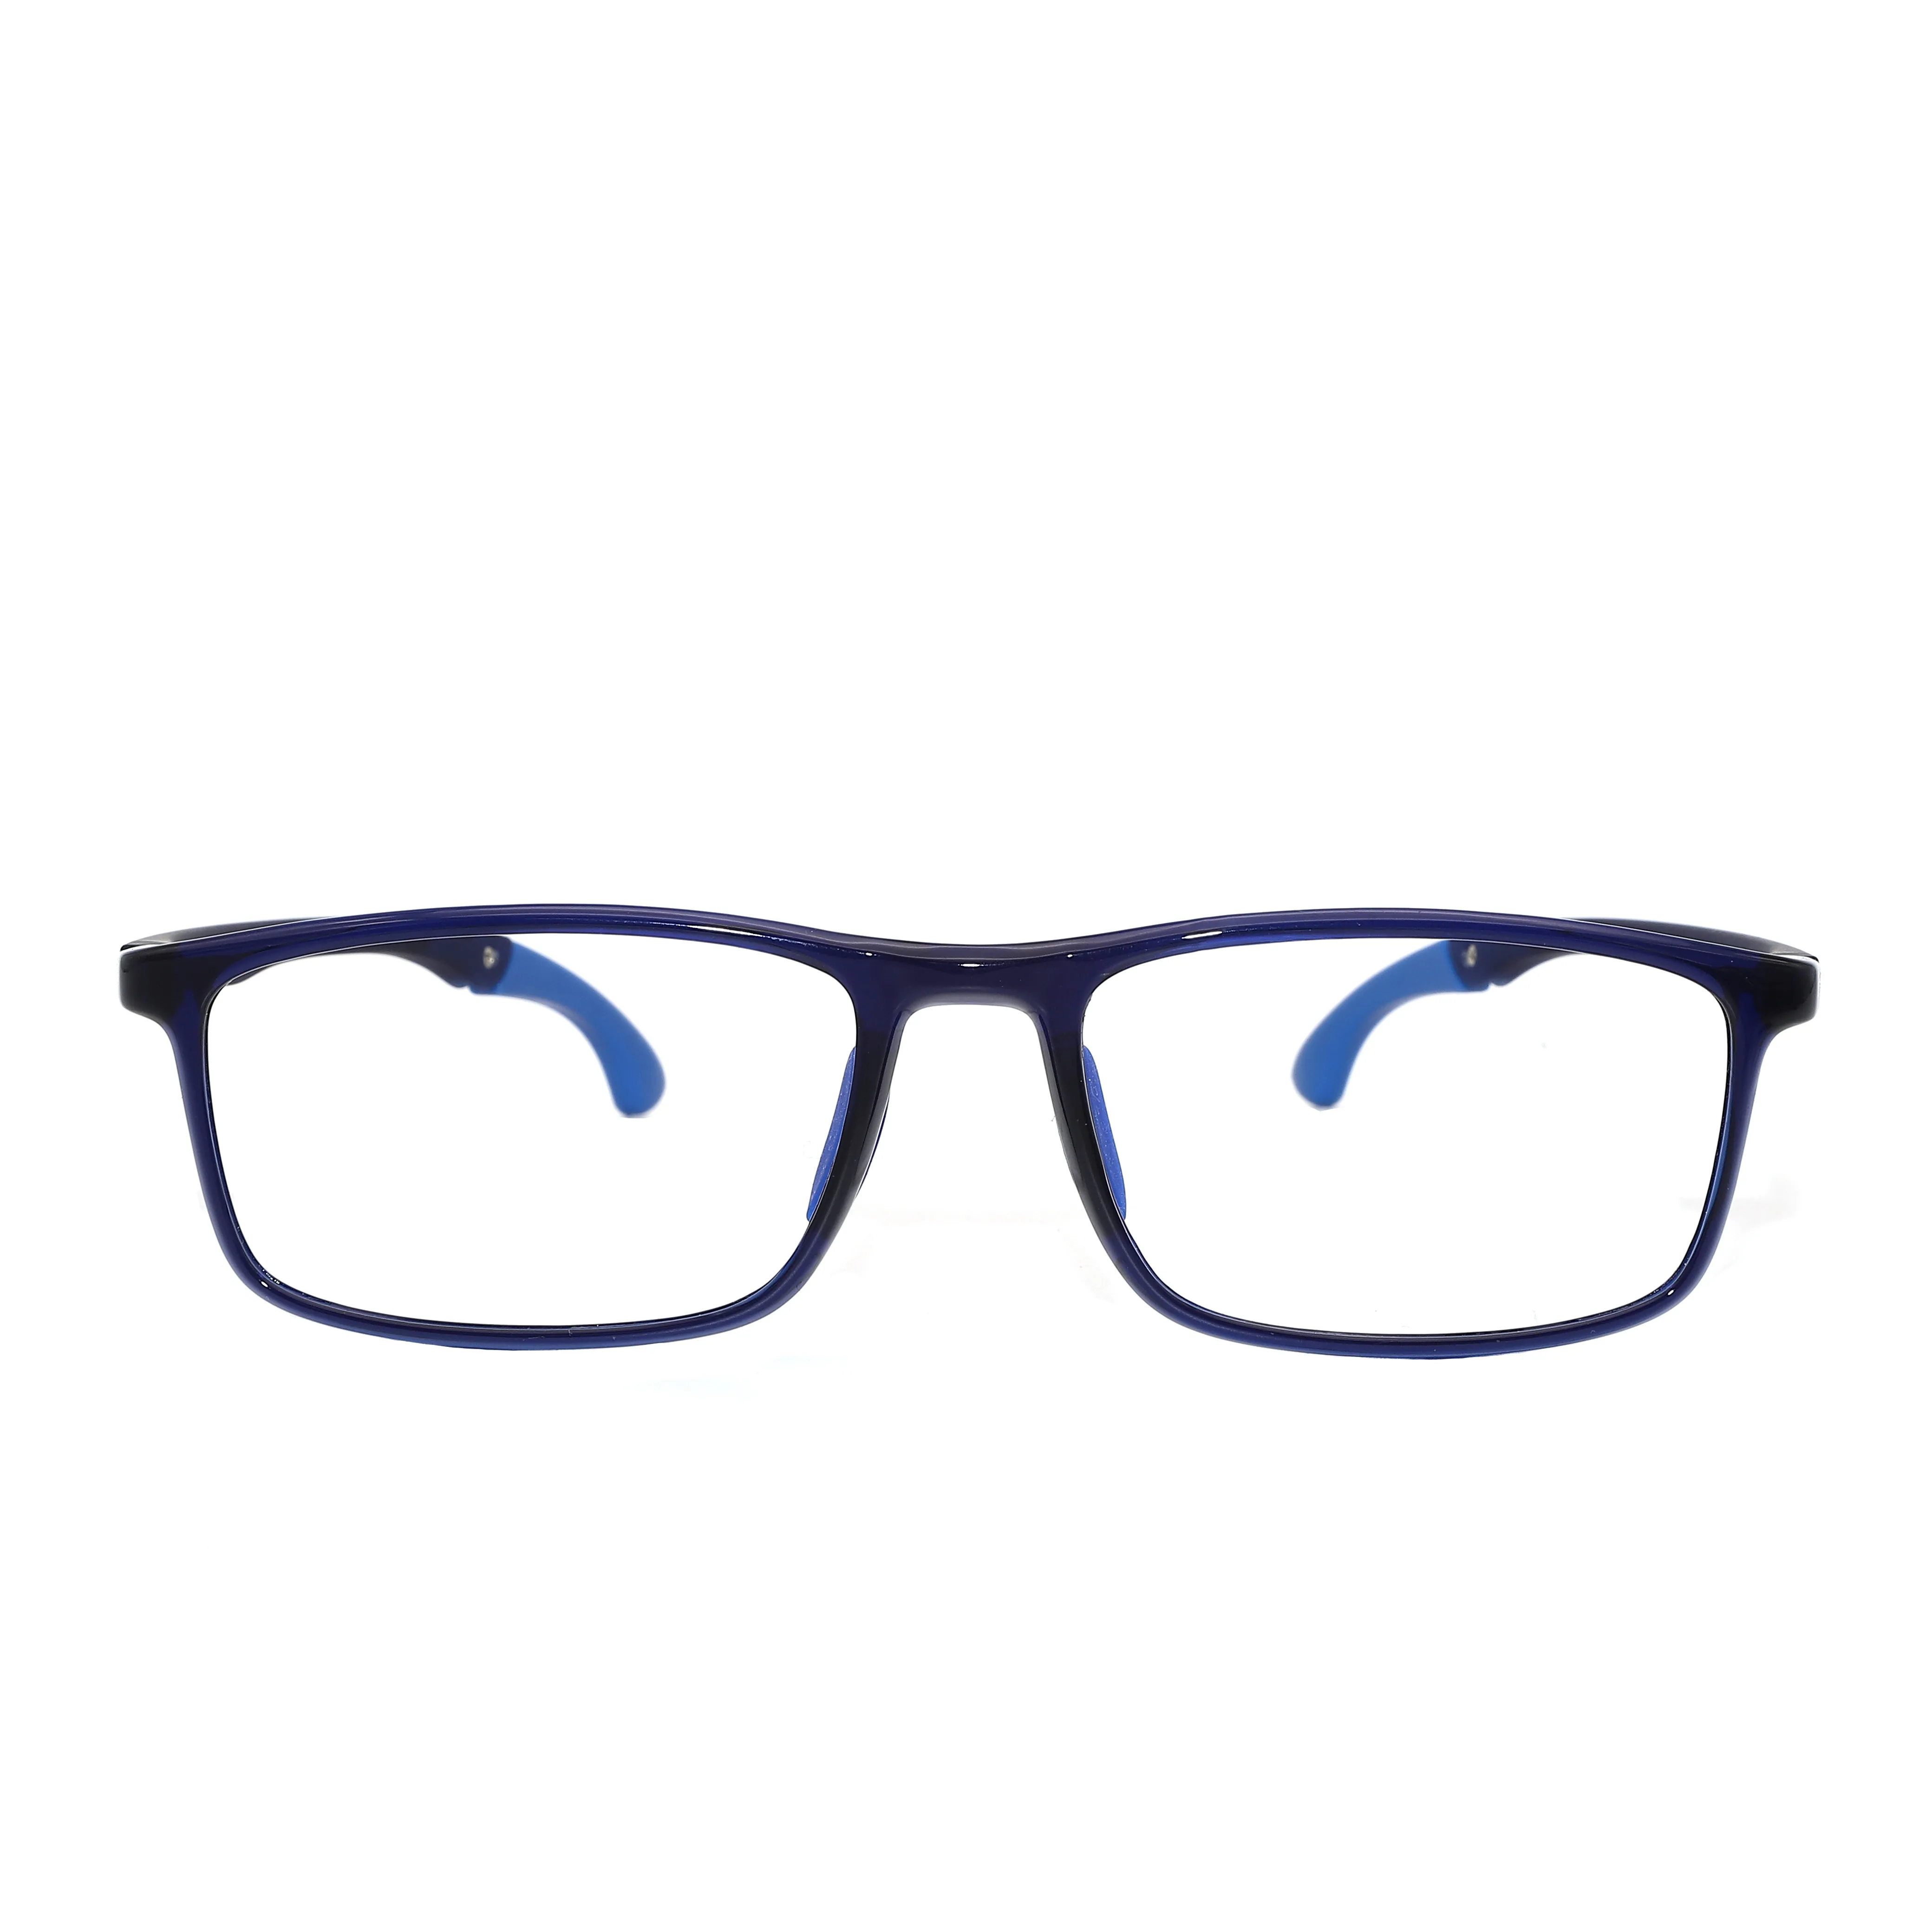 
Manufactory Wholesale flexible glasses frames kids children eyeglasses frame children tr90 optical eyeglasses frame  (1600137156490)